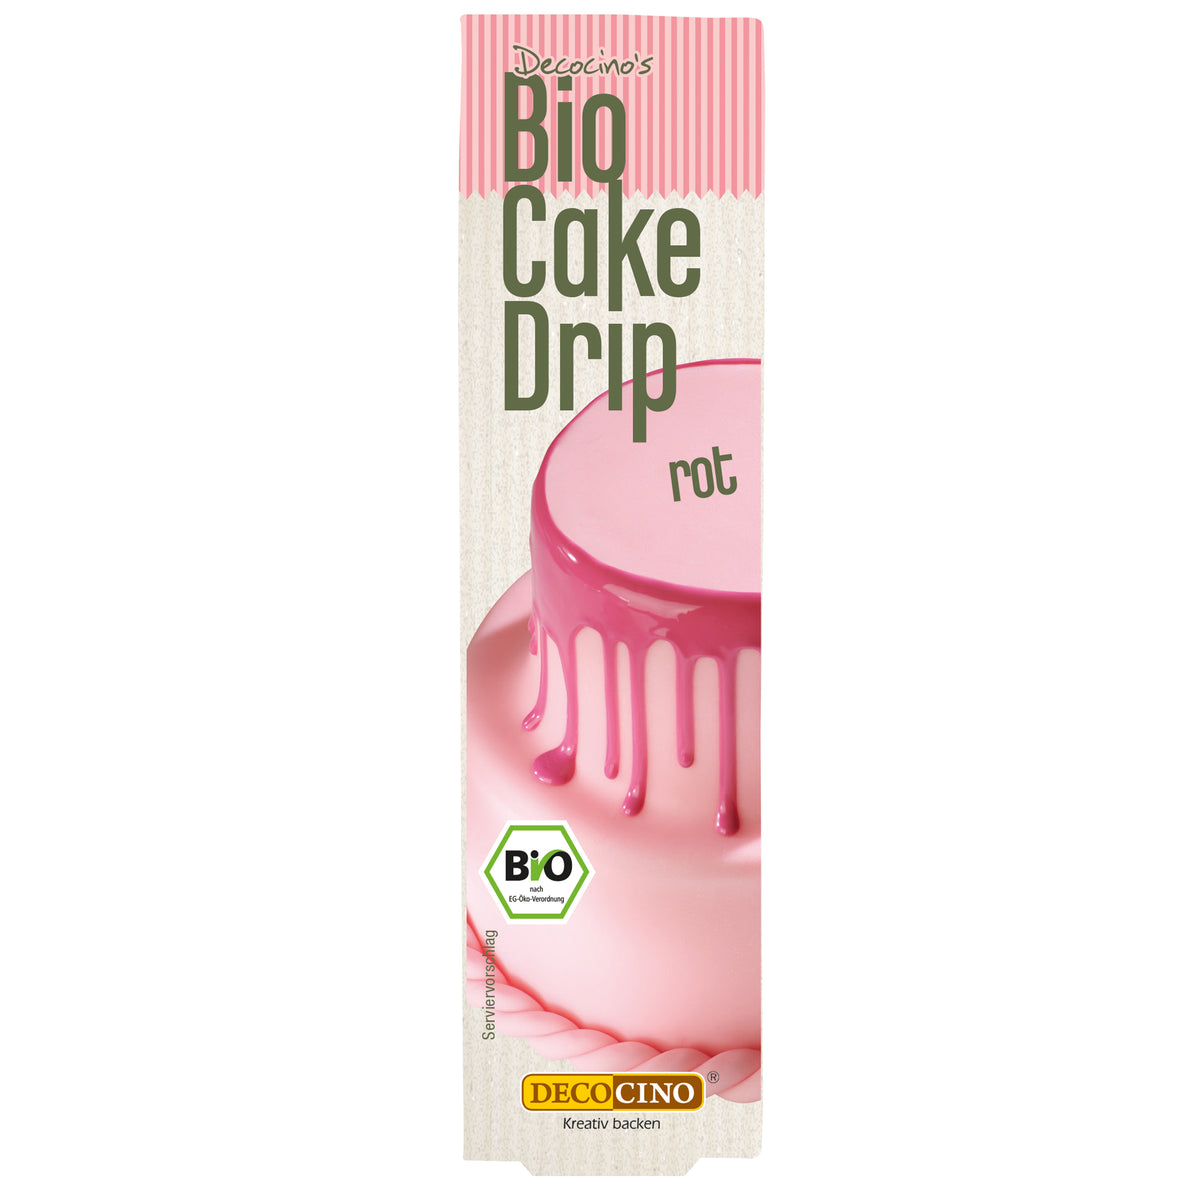 Bio Cake Drip Rot (40g)